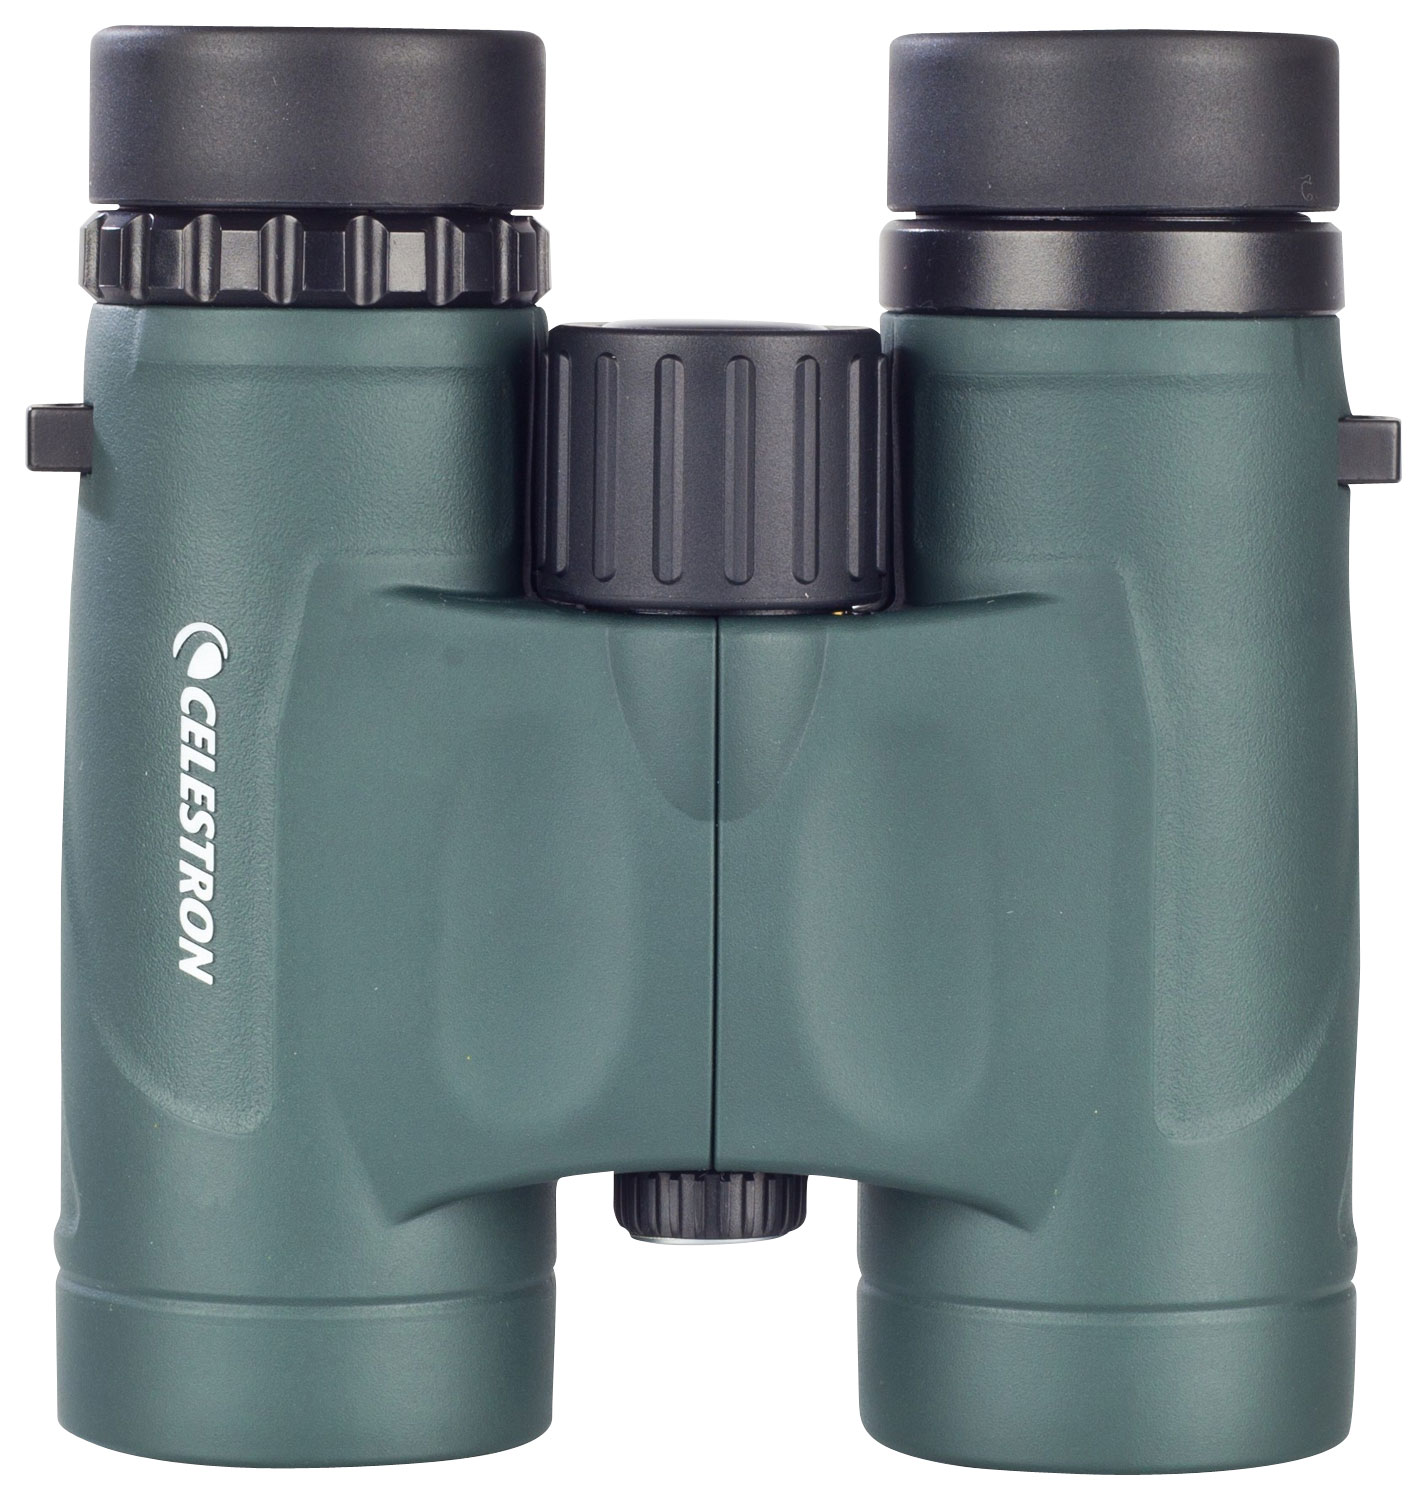 Celestron - Nature DX 10 x 32 Compact Waterproof Binoculars - Green